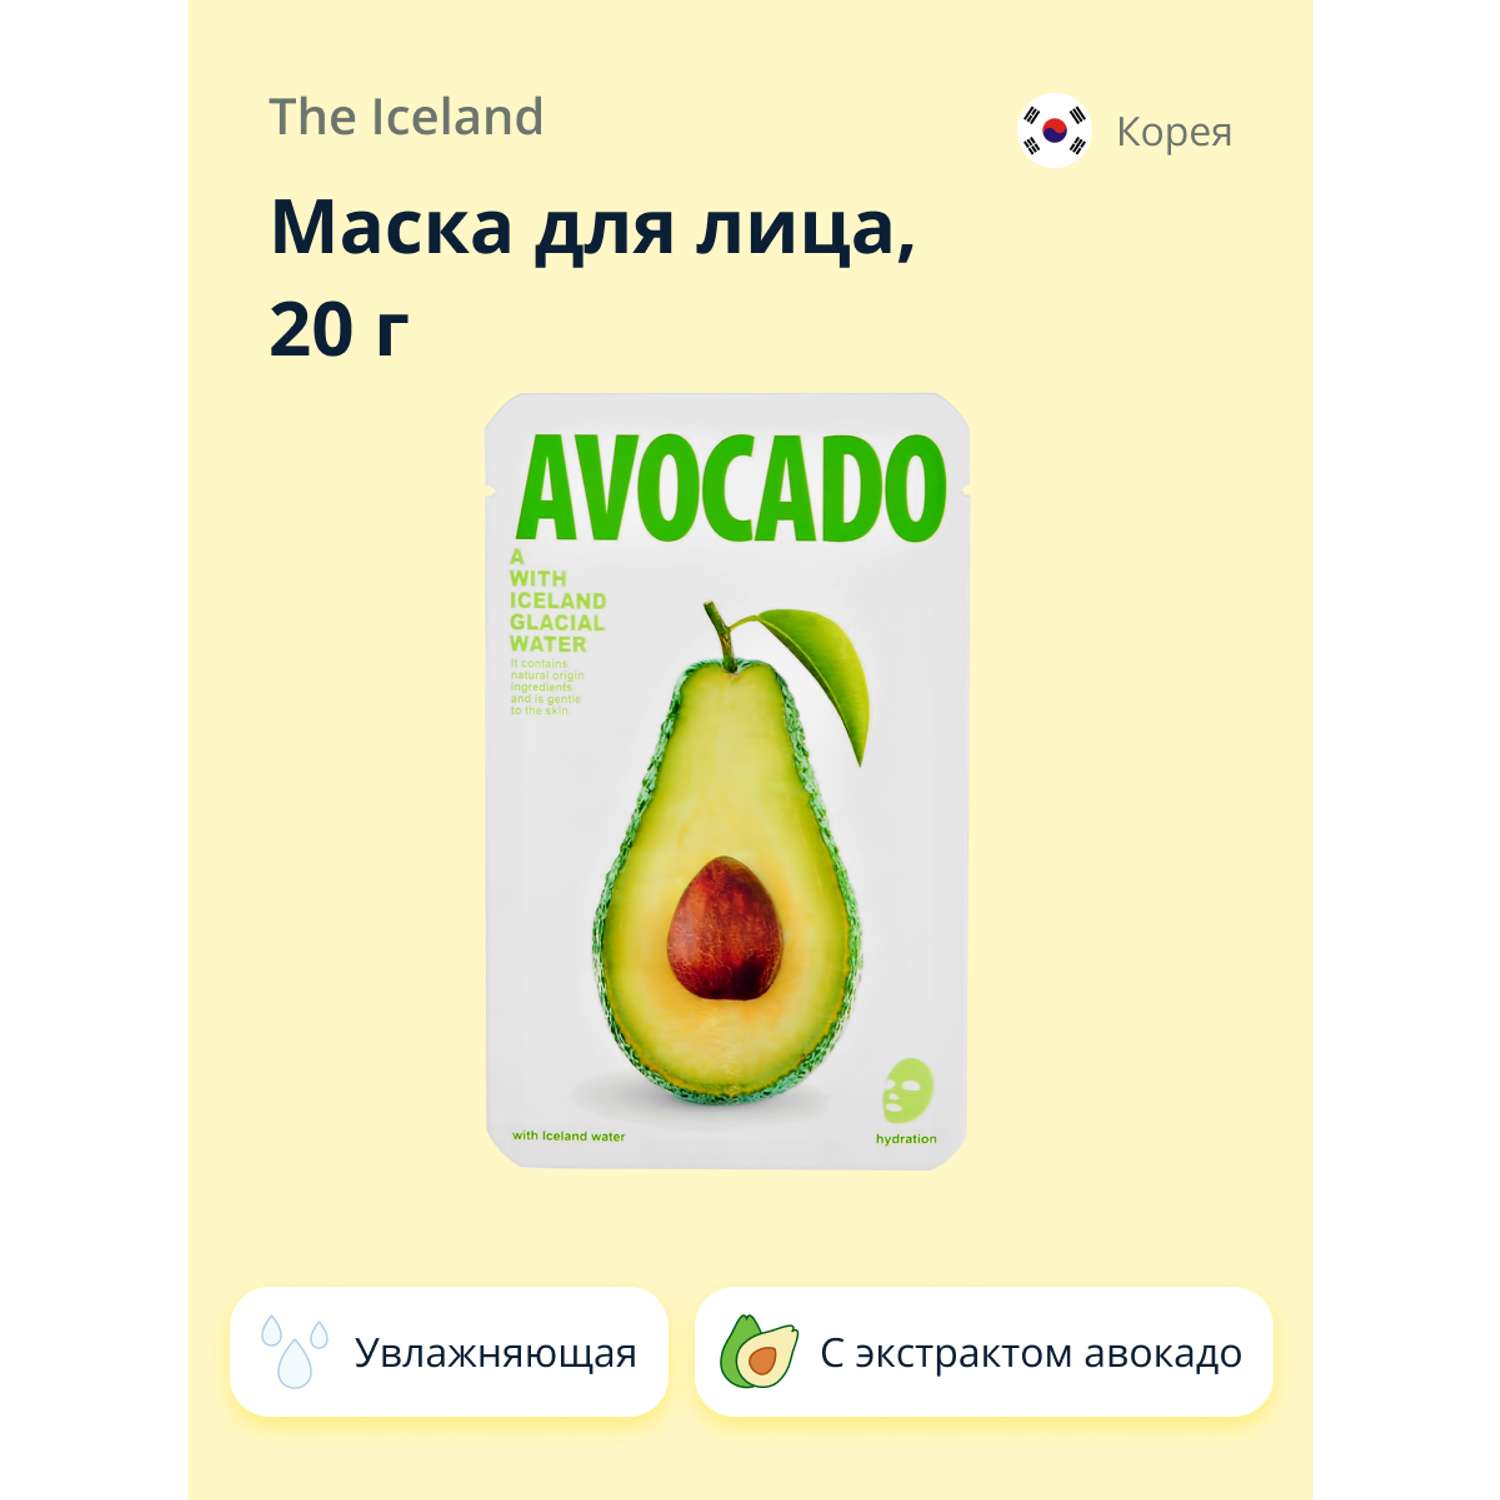 Маска тканевая The Iceland с экстрактом авокадо увлажняющая 20 г - фото 1